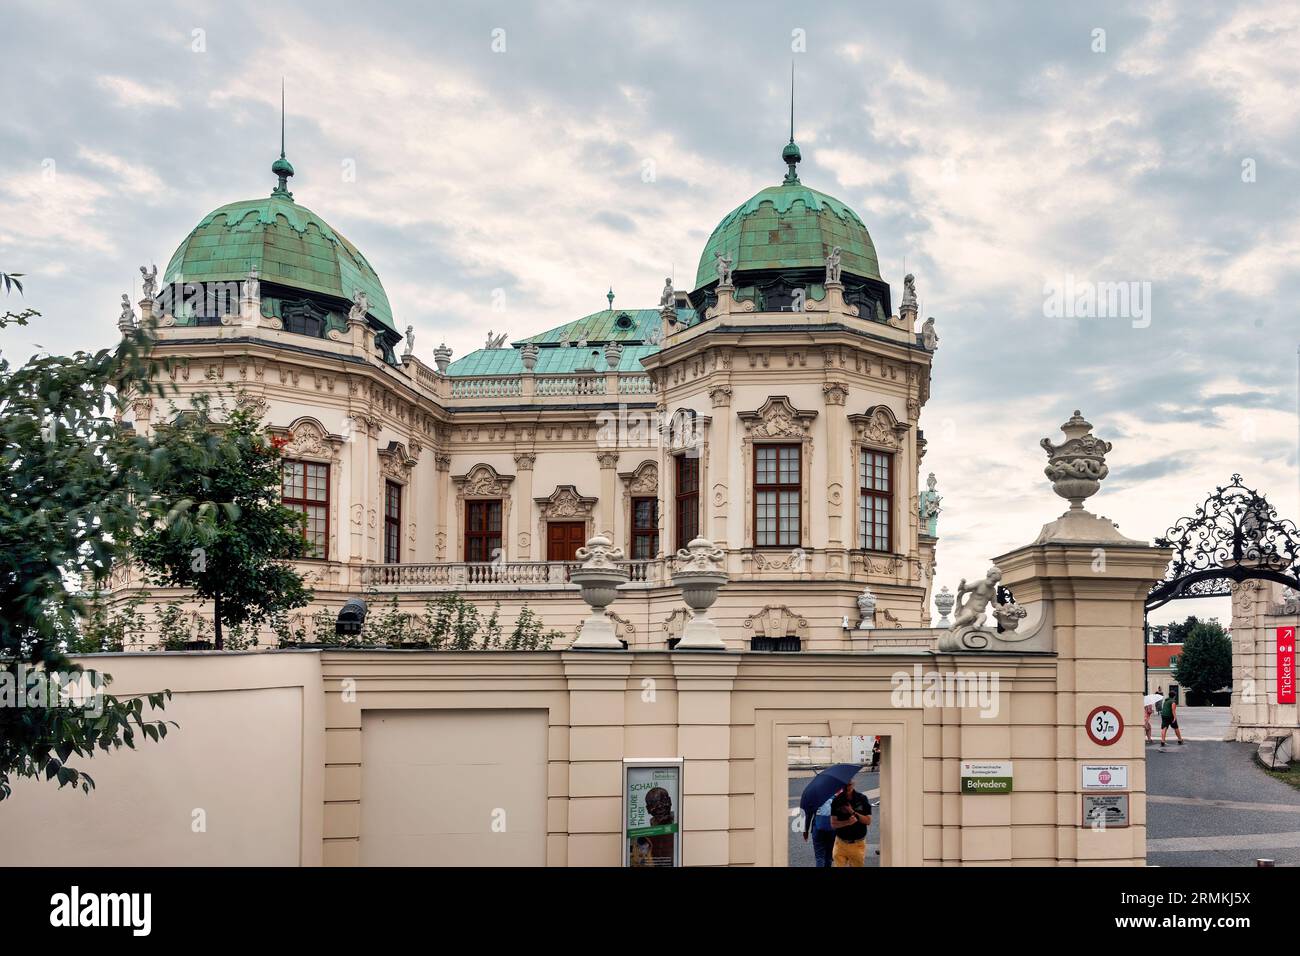 Eingang zum Schloss Belvedere in Wien Stock Photo